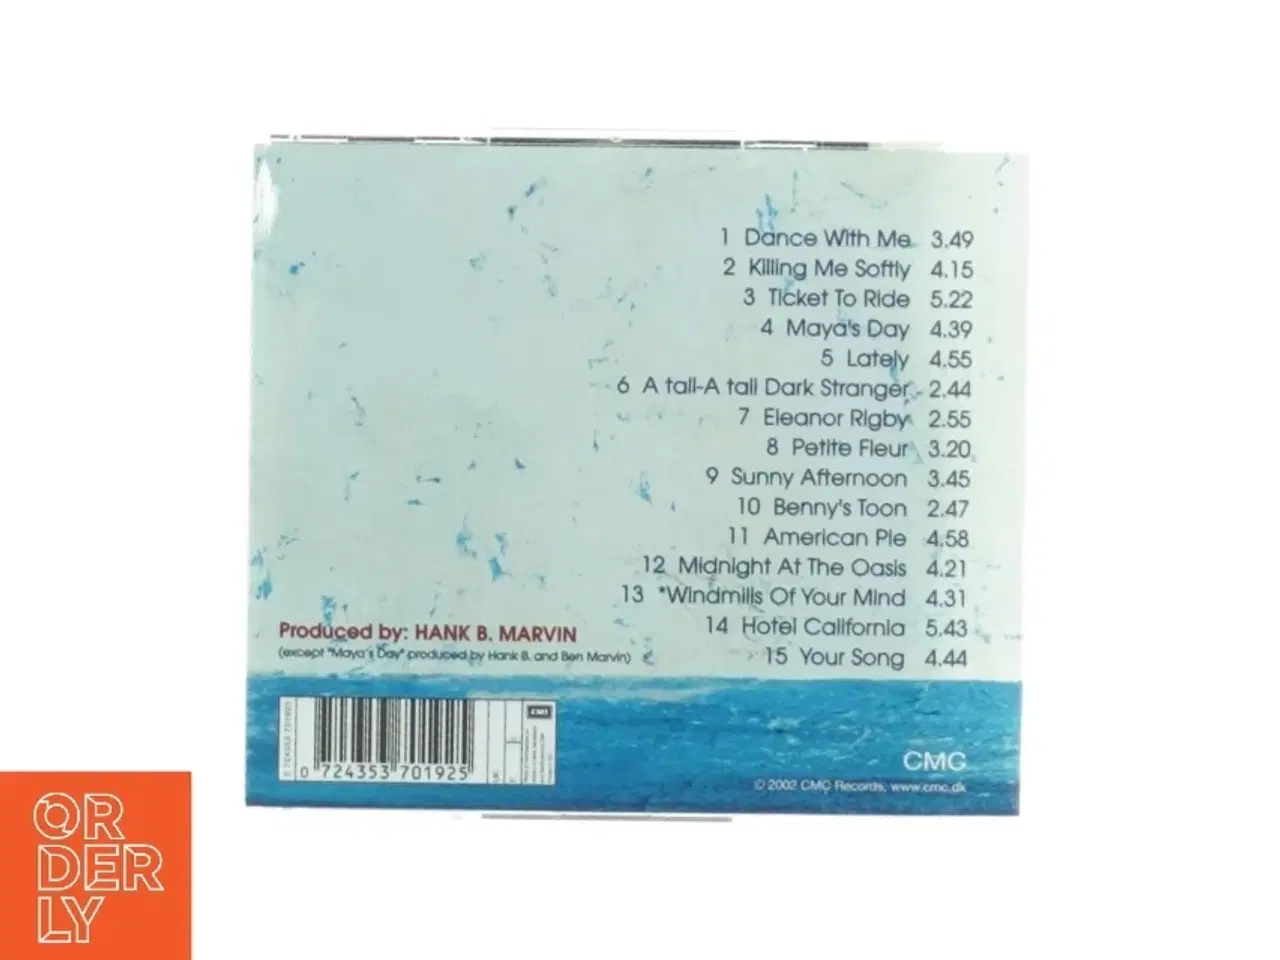 Billede 2 - Hank Marvin - Guitar Player CD fra CMC Records